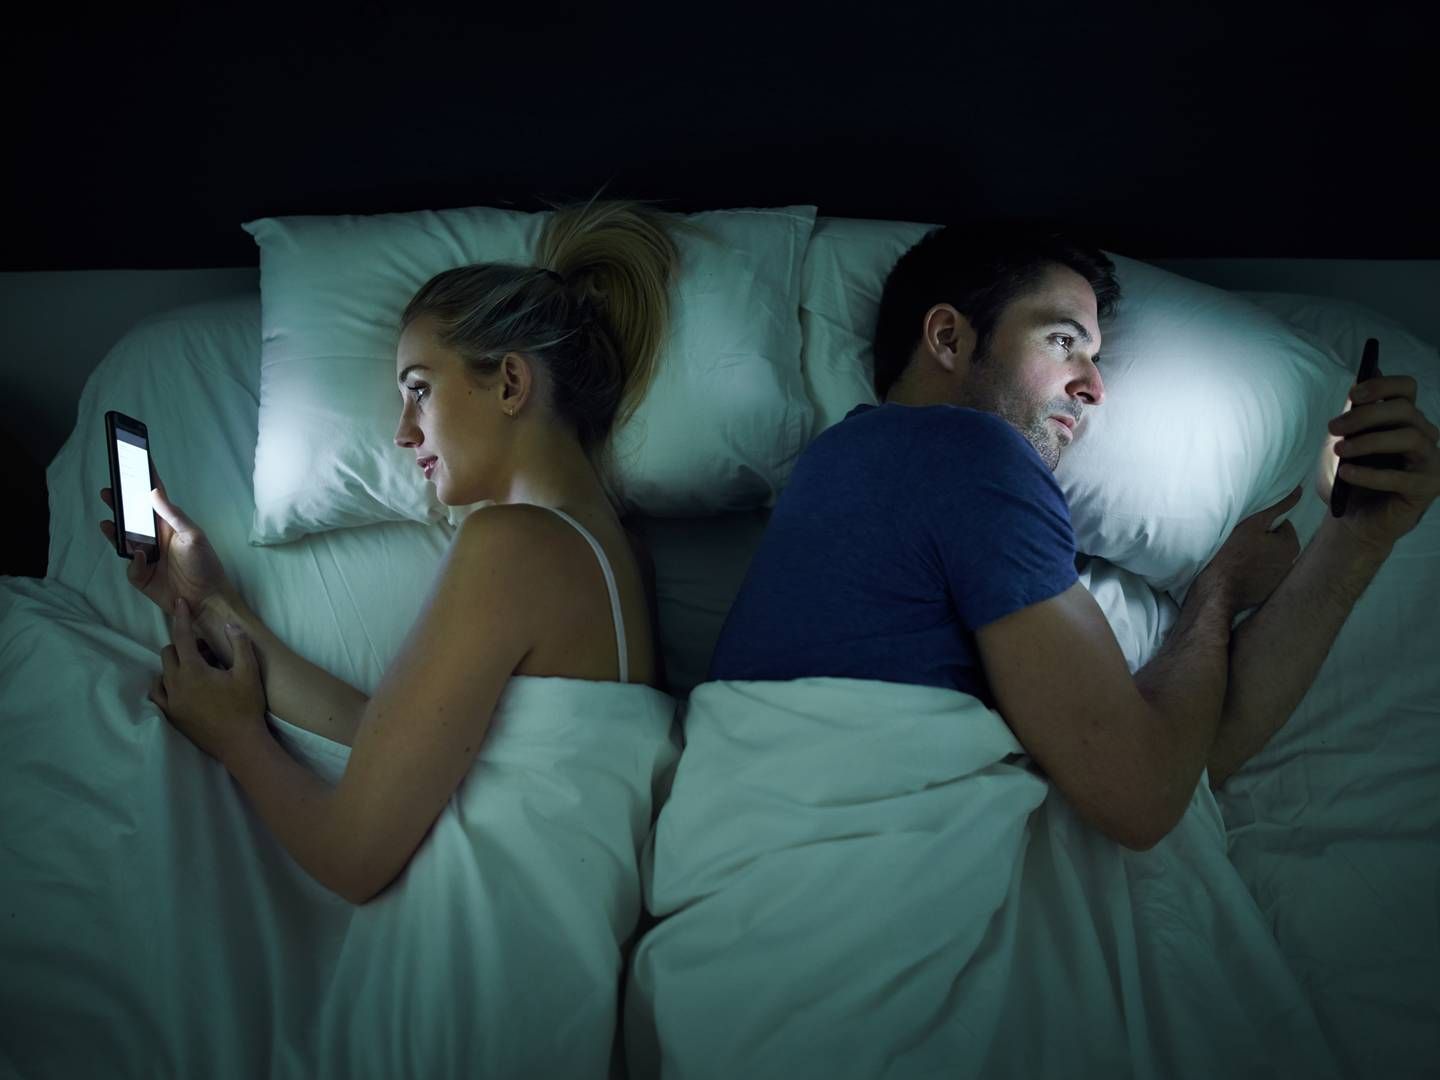 Psykologer ved Halisdemir Universitet har fundet beviser for at ægtepar, der hele tiden tjekker deres mobil, har lavere ægteskabstilfredshed end par, der ikke gør det. | Foto: Getty Images